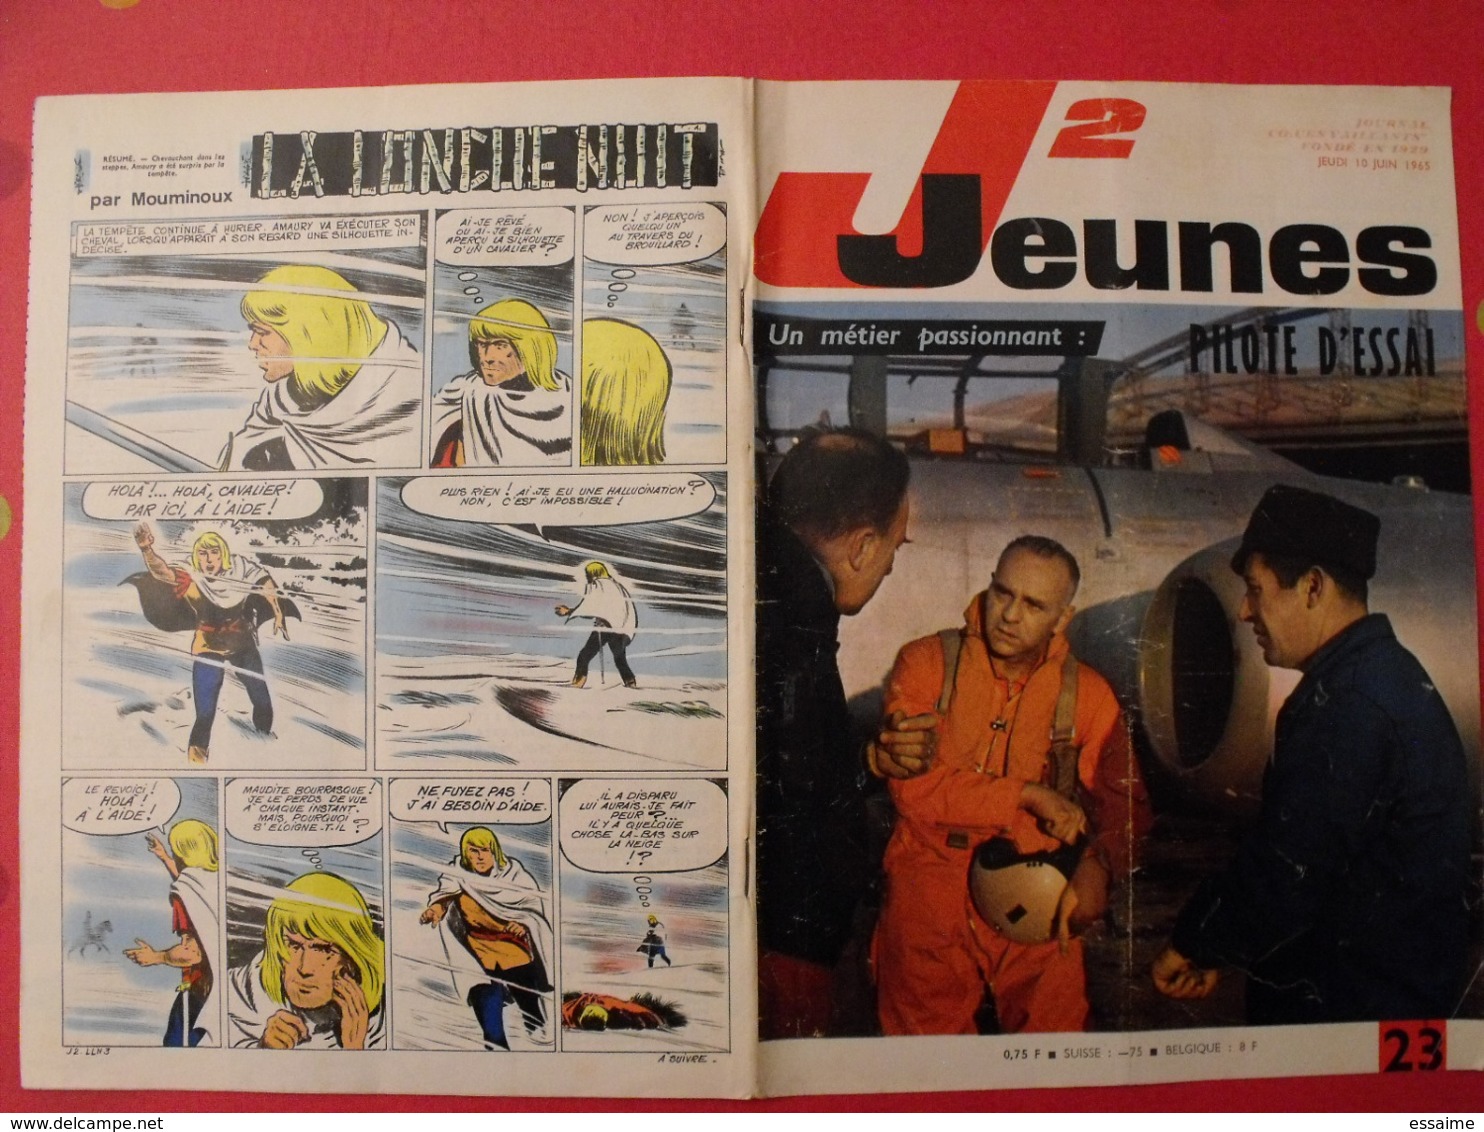 lot de 9 J2 Jeunes de 1965. n° 16 à 25 (sauf 22). 24 heures du Mans delinx mouminoux brochard gloesner chery rigot